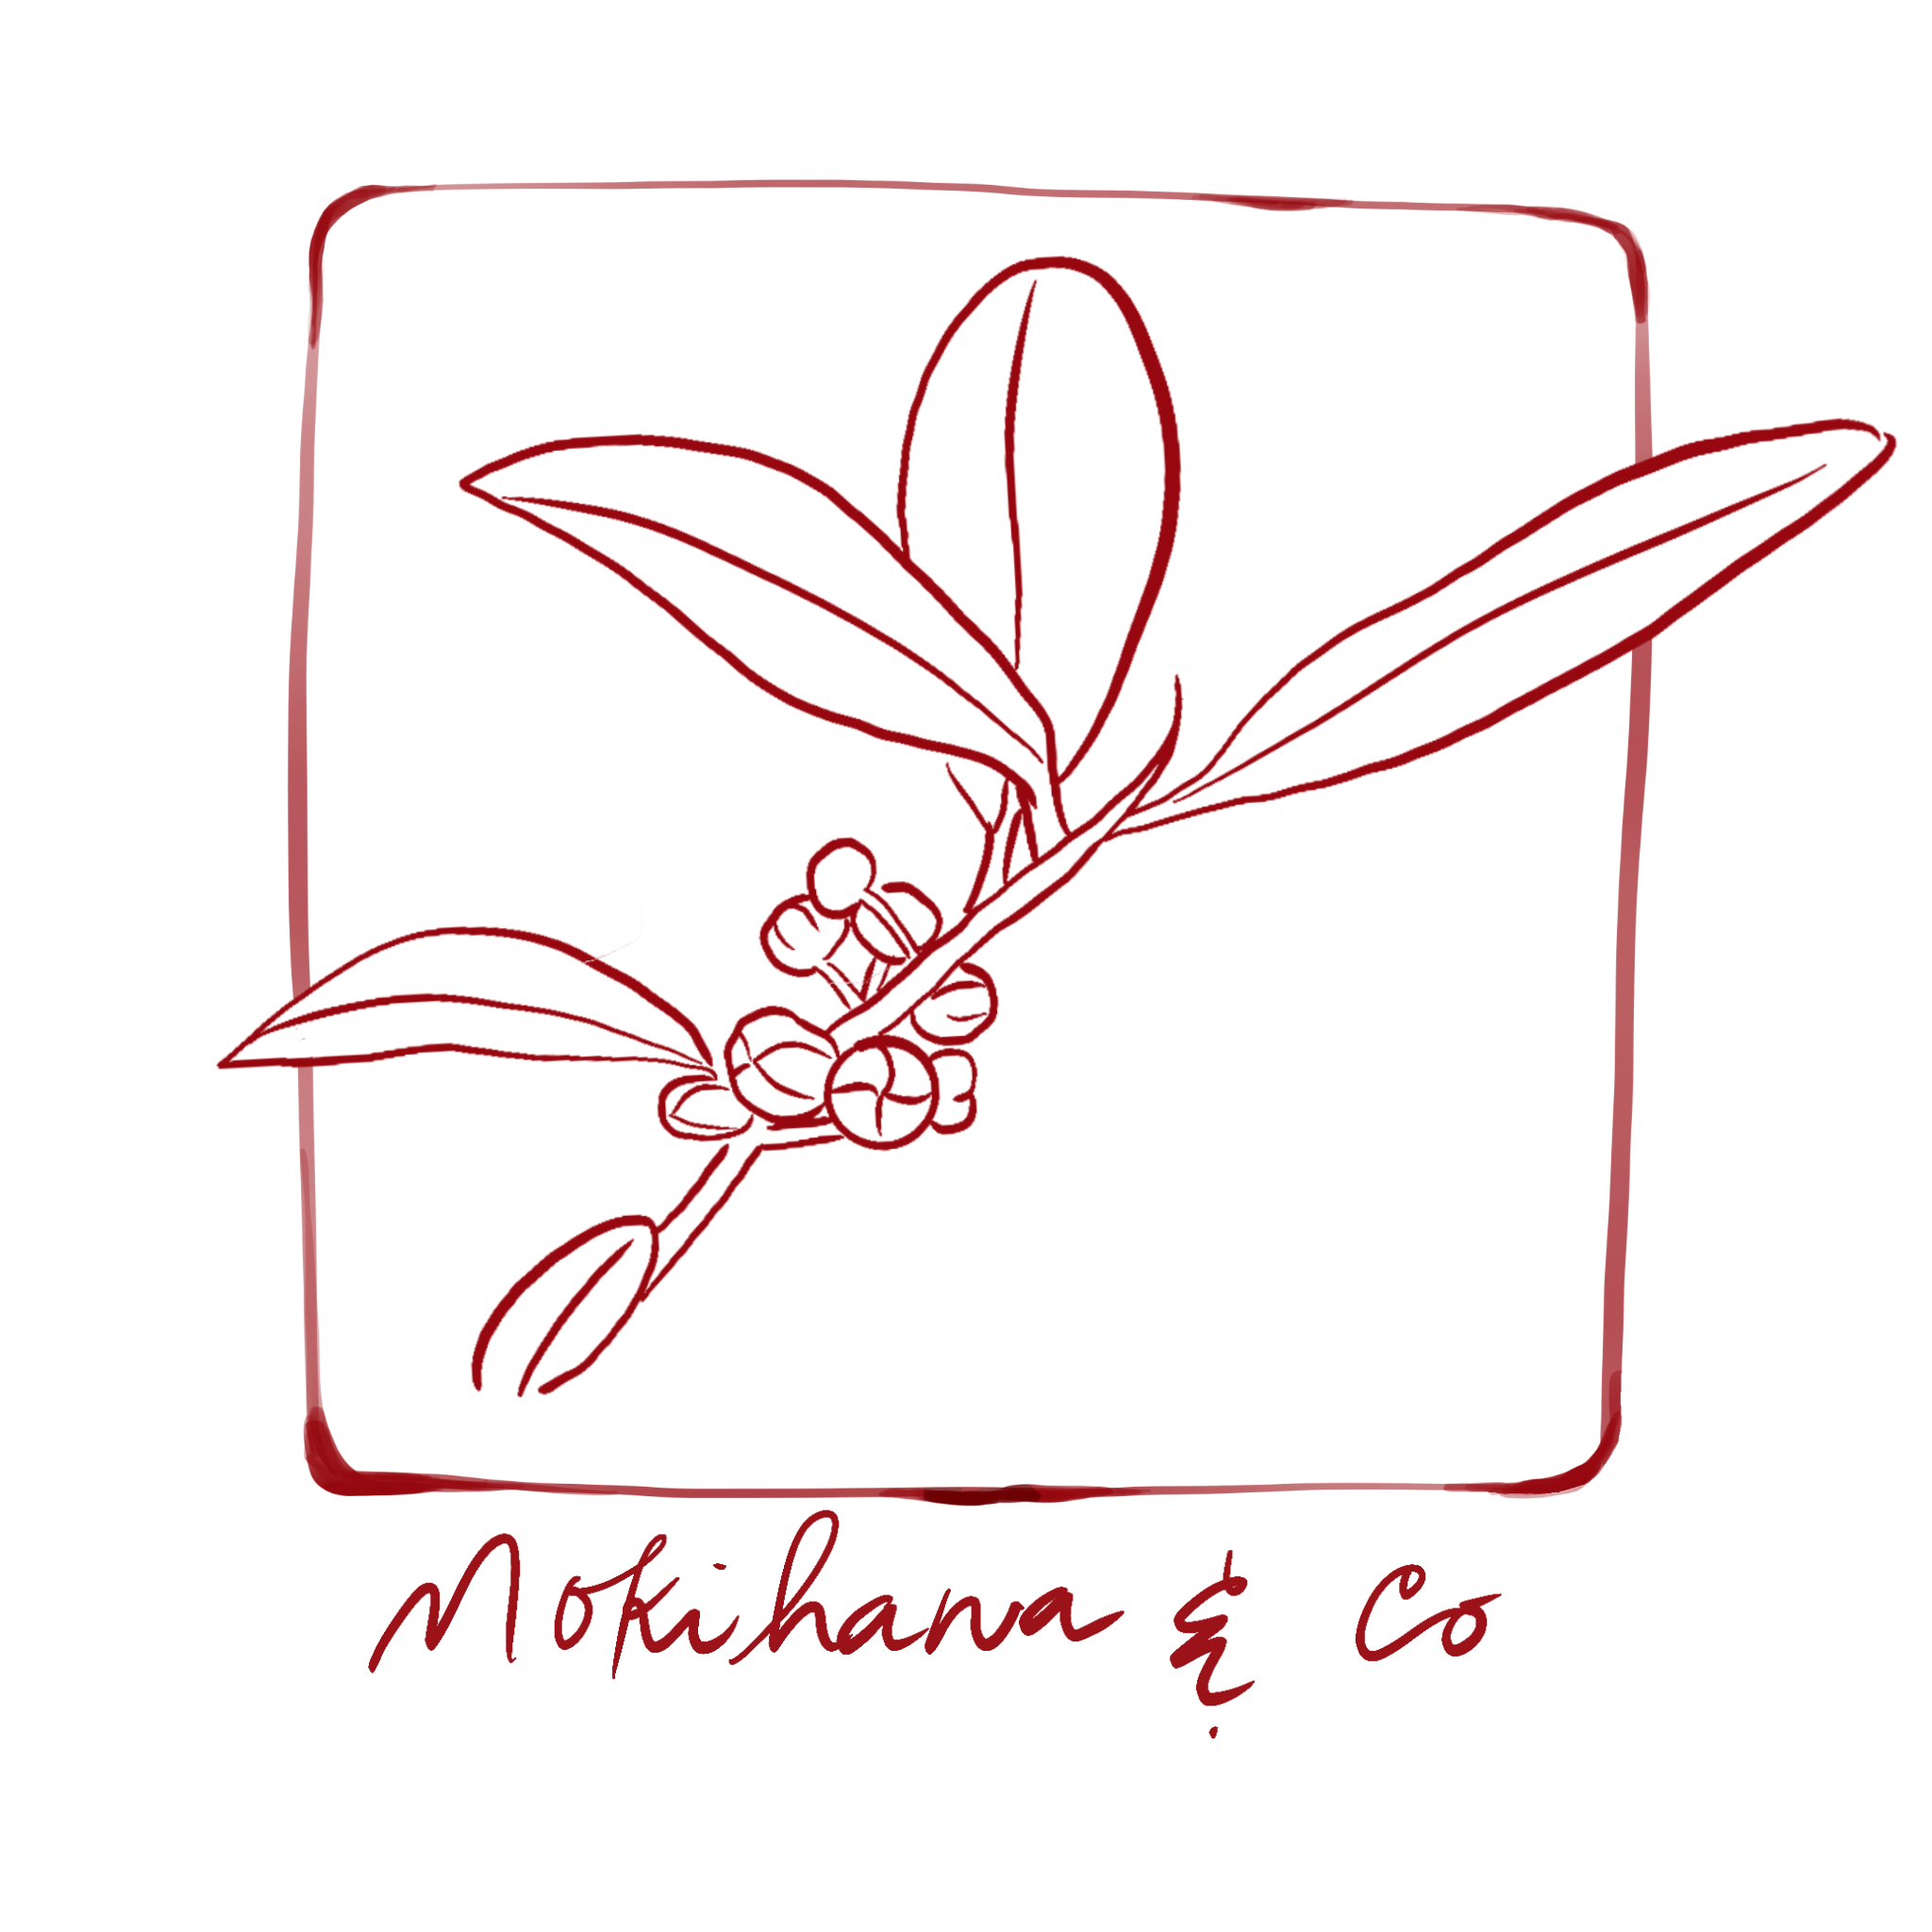 Mokihana & Co